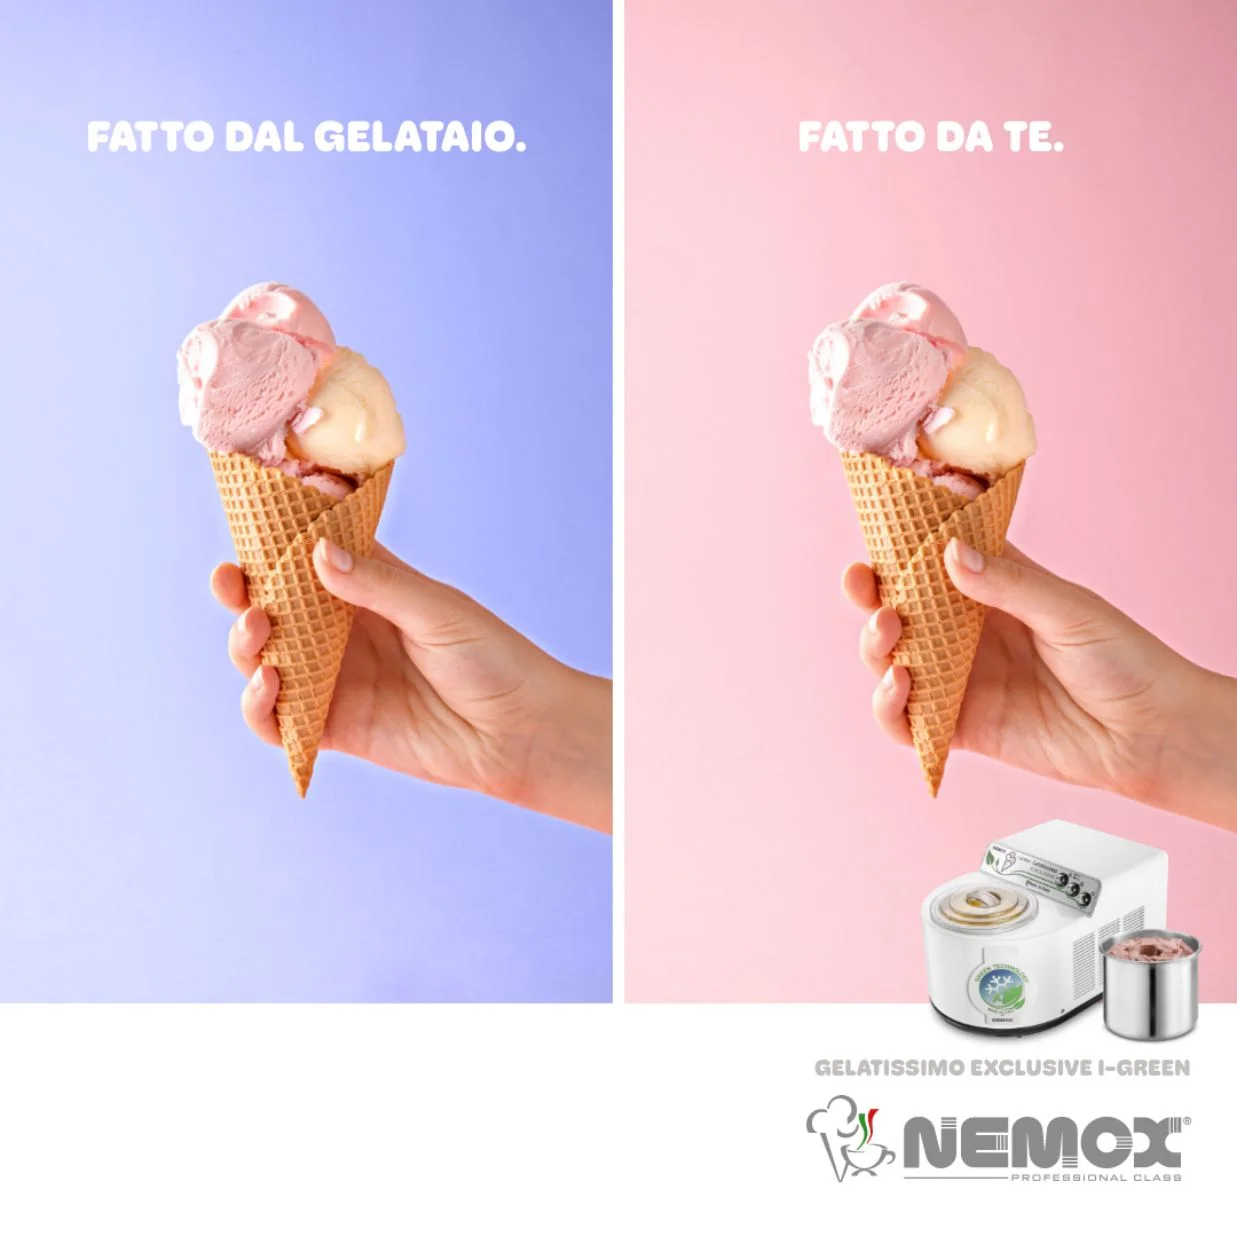 Dexa: realizzazione servizio fotografico per Nemox